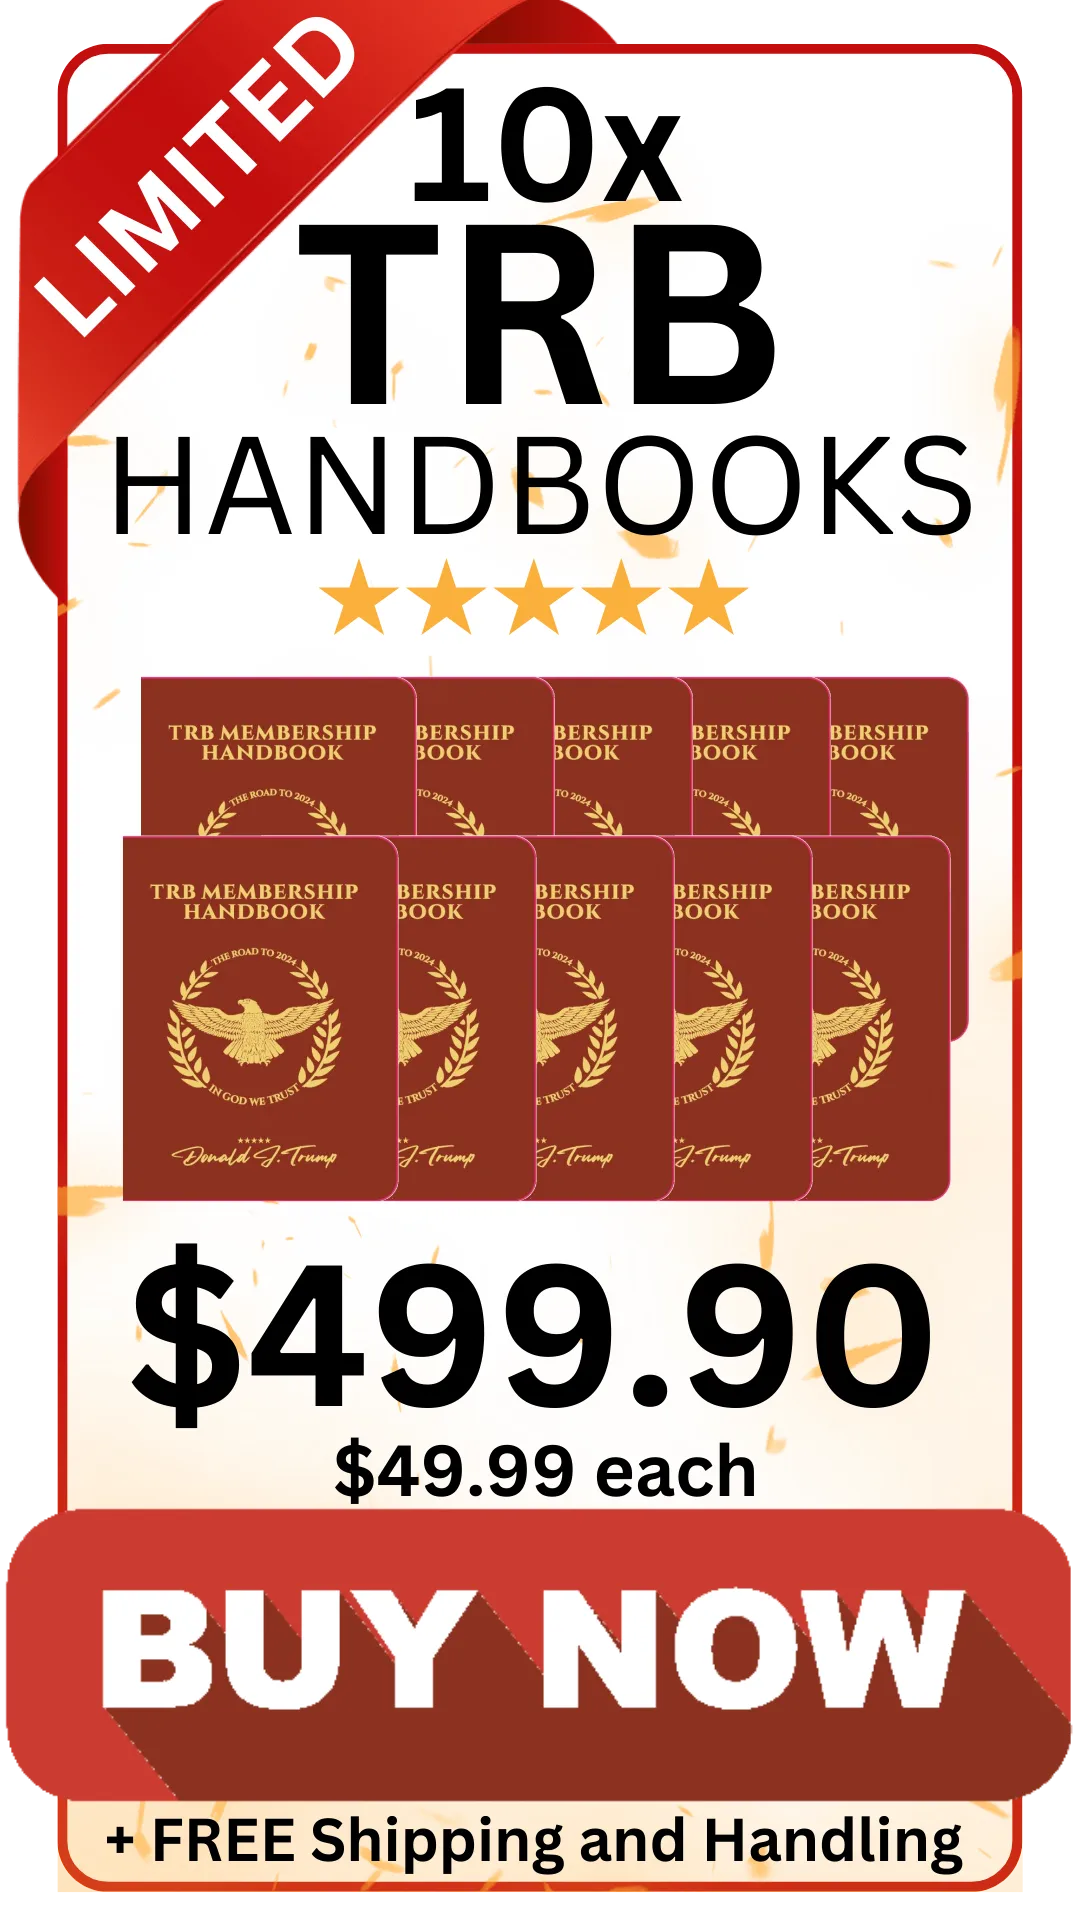 10xtrb-handbooks-trump